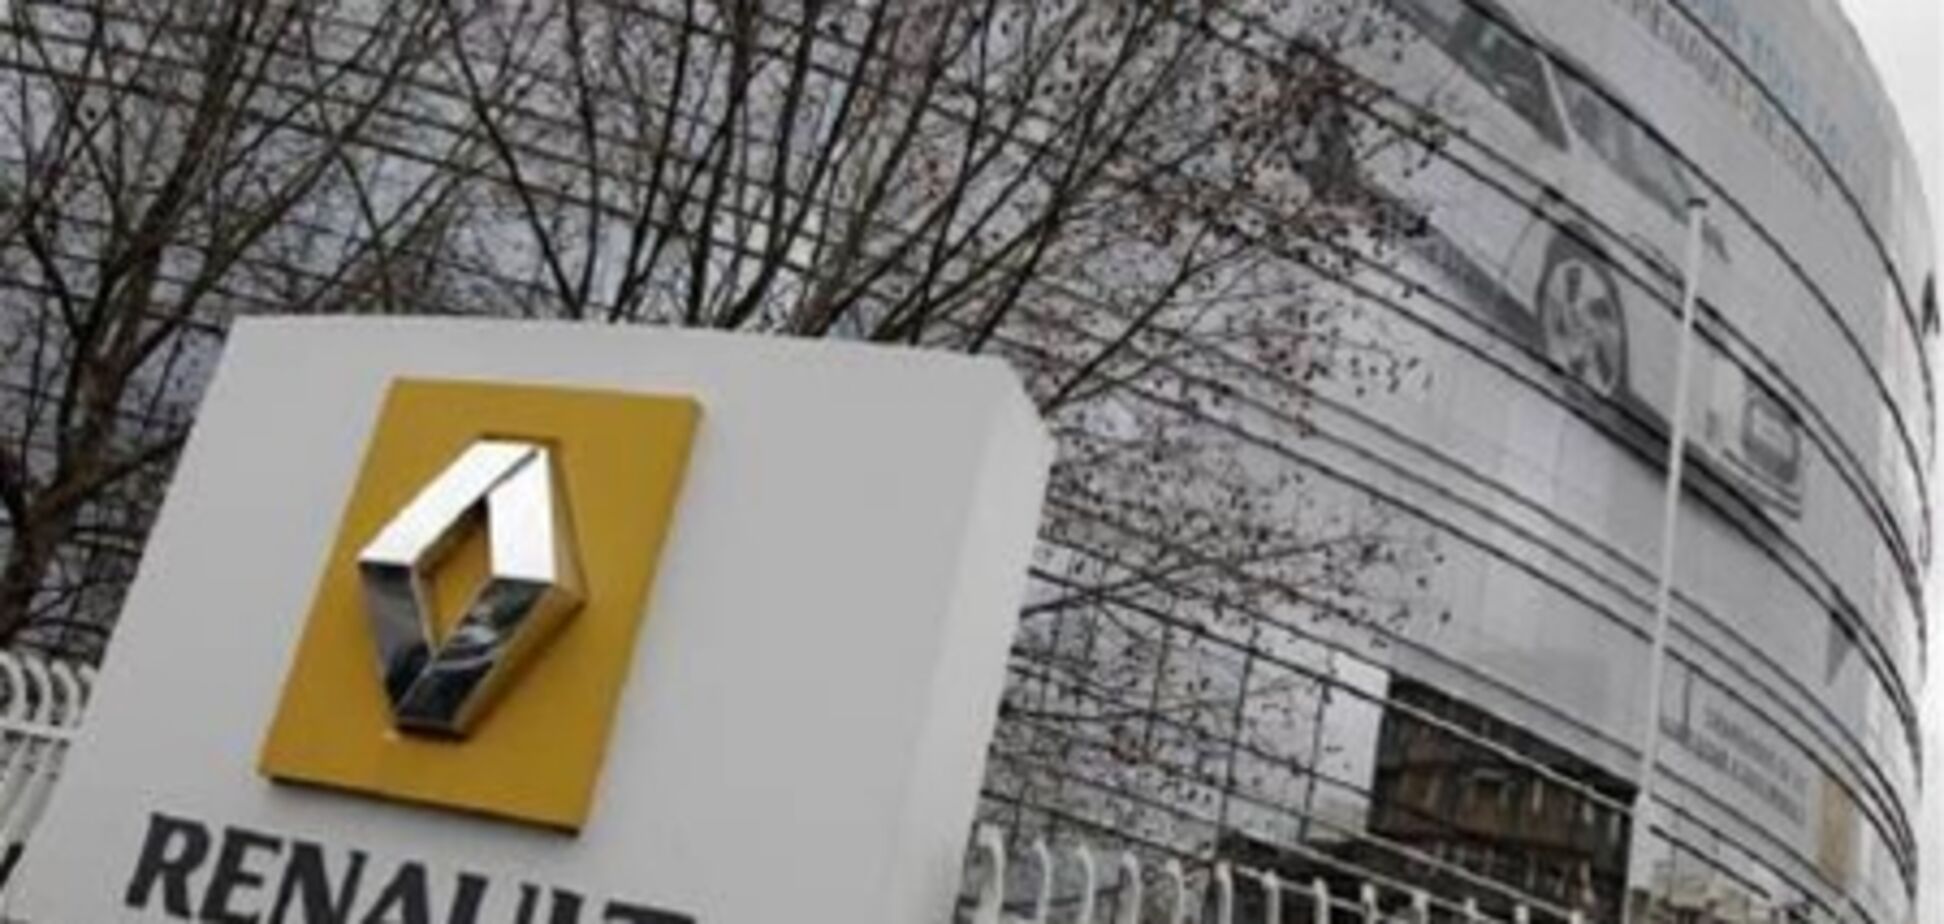 Два из трех менеджеров Renault подали в суд встречные иски об обвинении в шпионаже